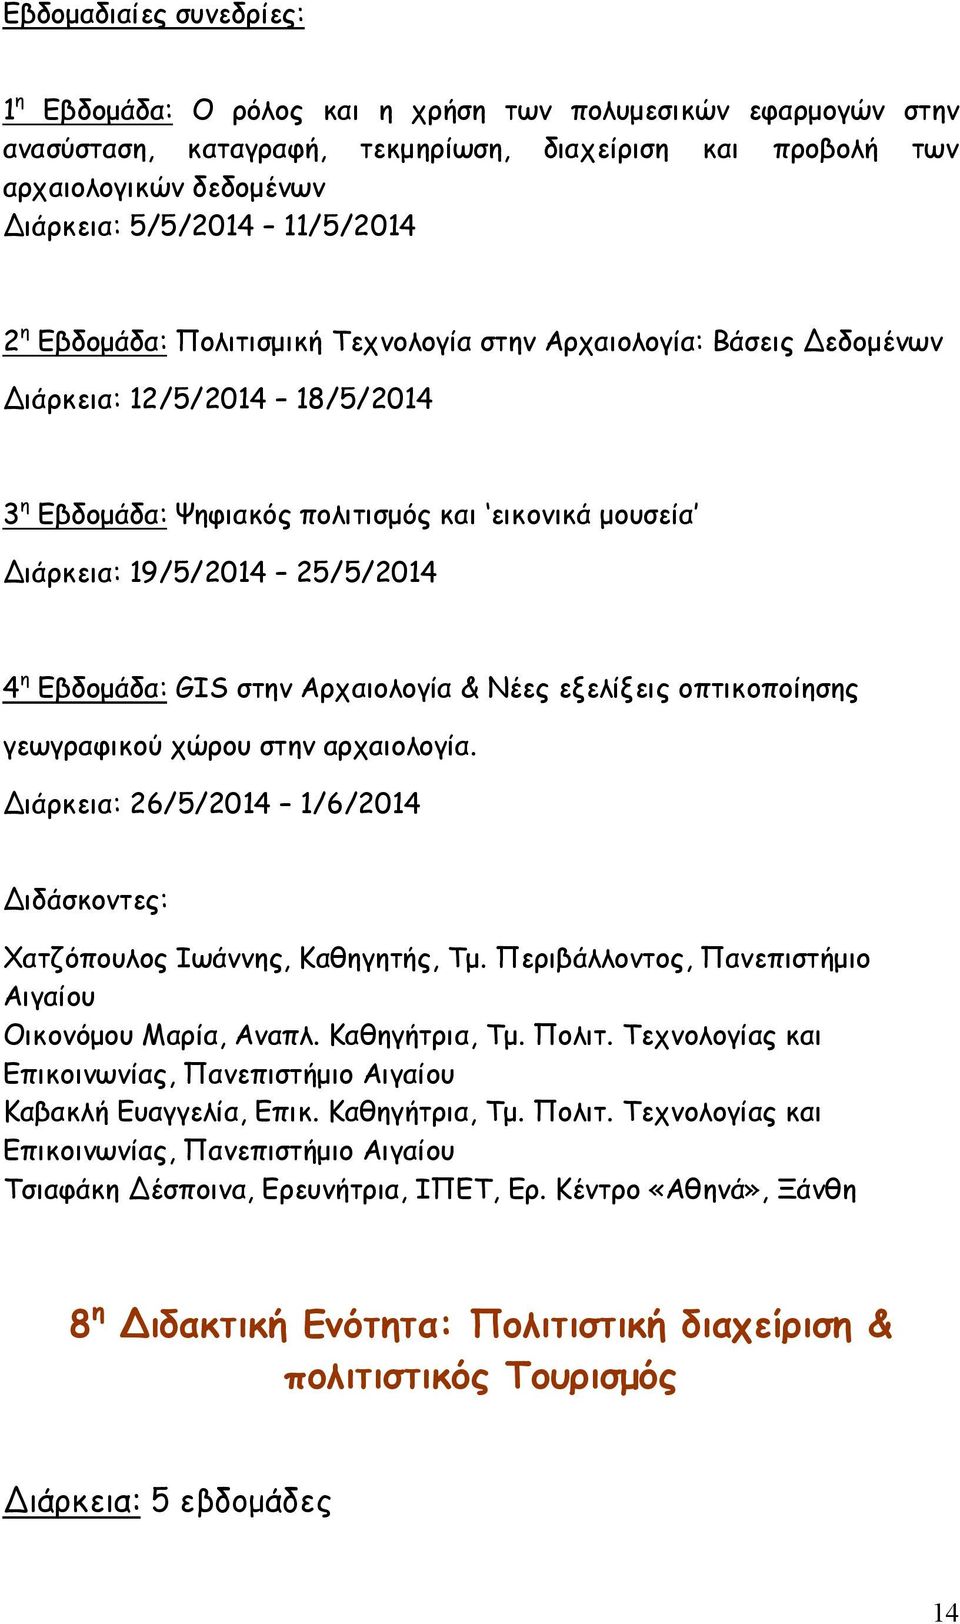 η Εβδομάδα: GIS στην Αρχαιολογία & Νέες εξελίξεις οπτικοποίησης γεωγραφικού χώρου στην αρχαιολογία. Διάρκεια: 26/5/2014 1/6/2014 Διδάσκοντες: Χατζόπουλος Ιωάννης, Καθηγητής, Τμ.